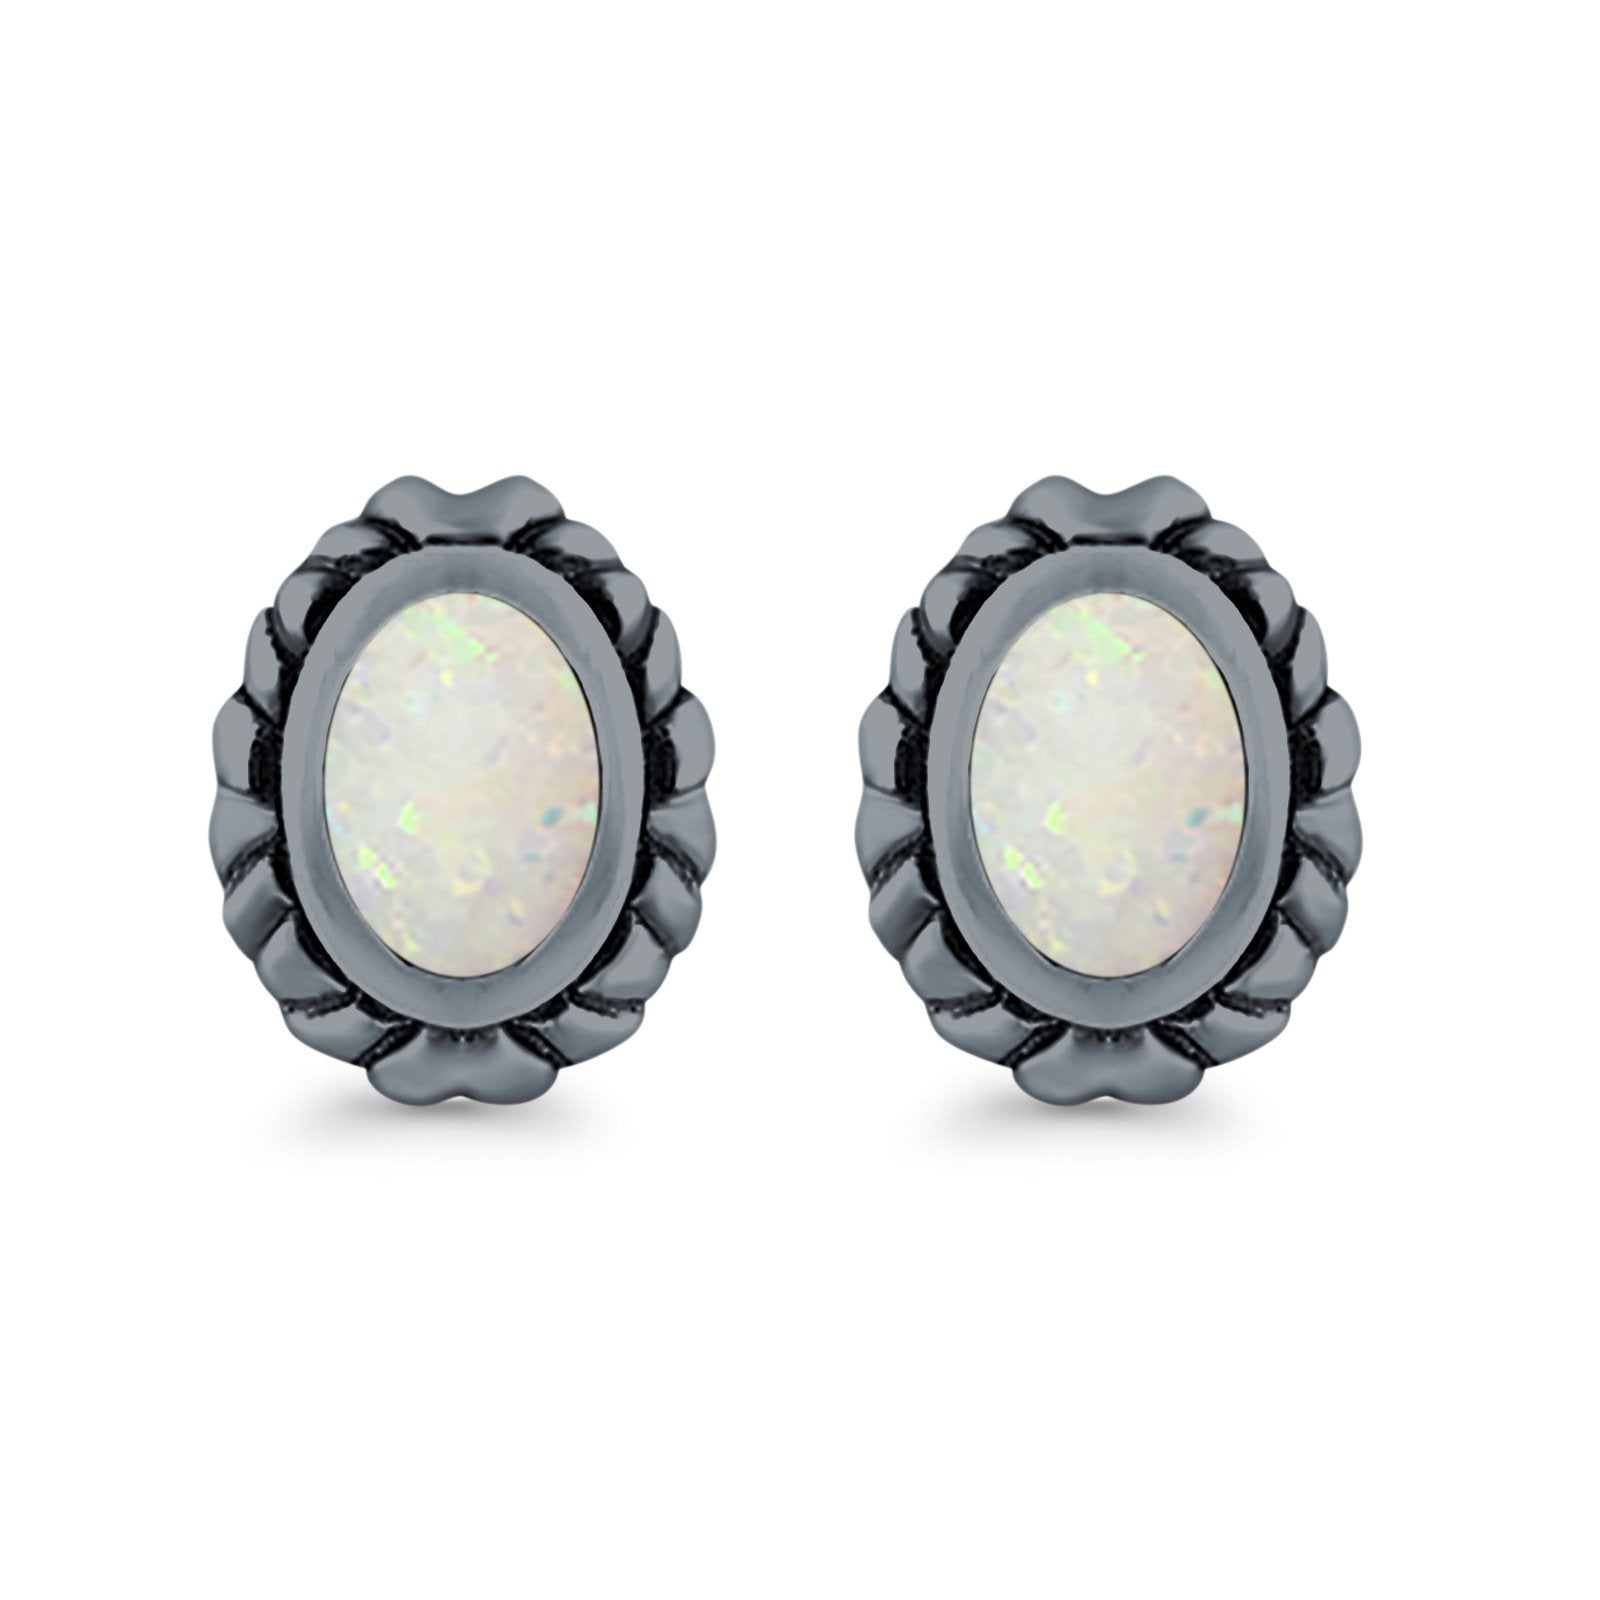 Oval Stud Earrings Created Opal 925 Sterling Silver (10mm)